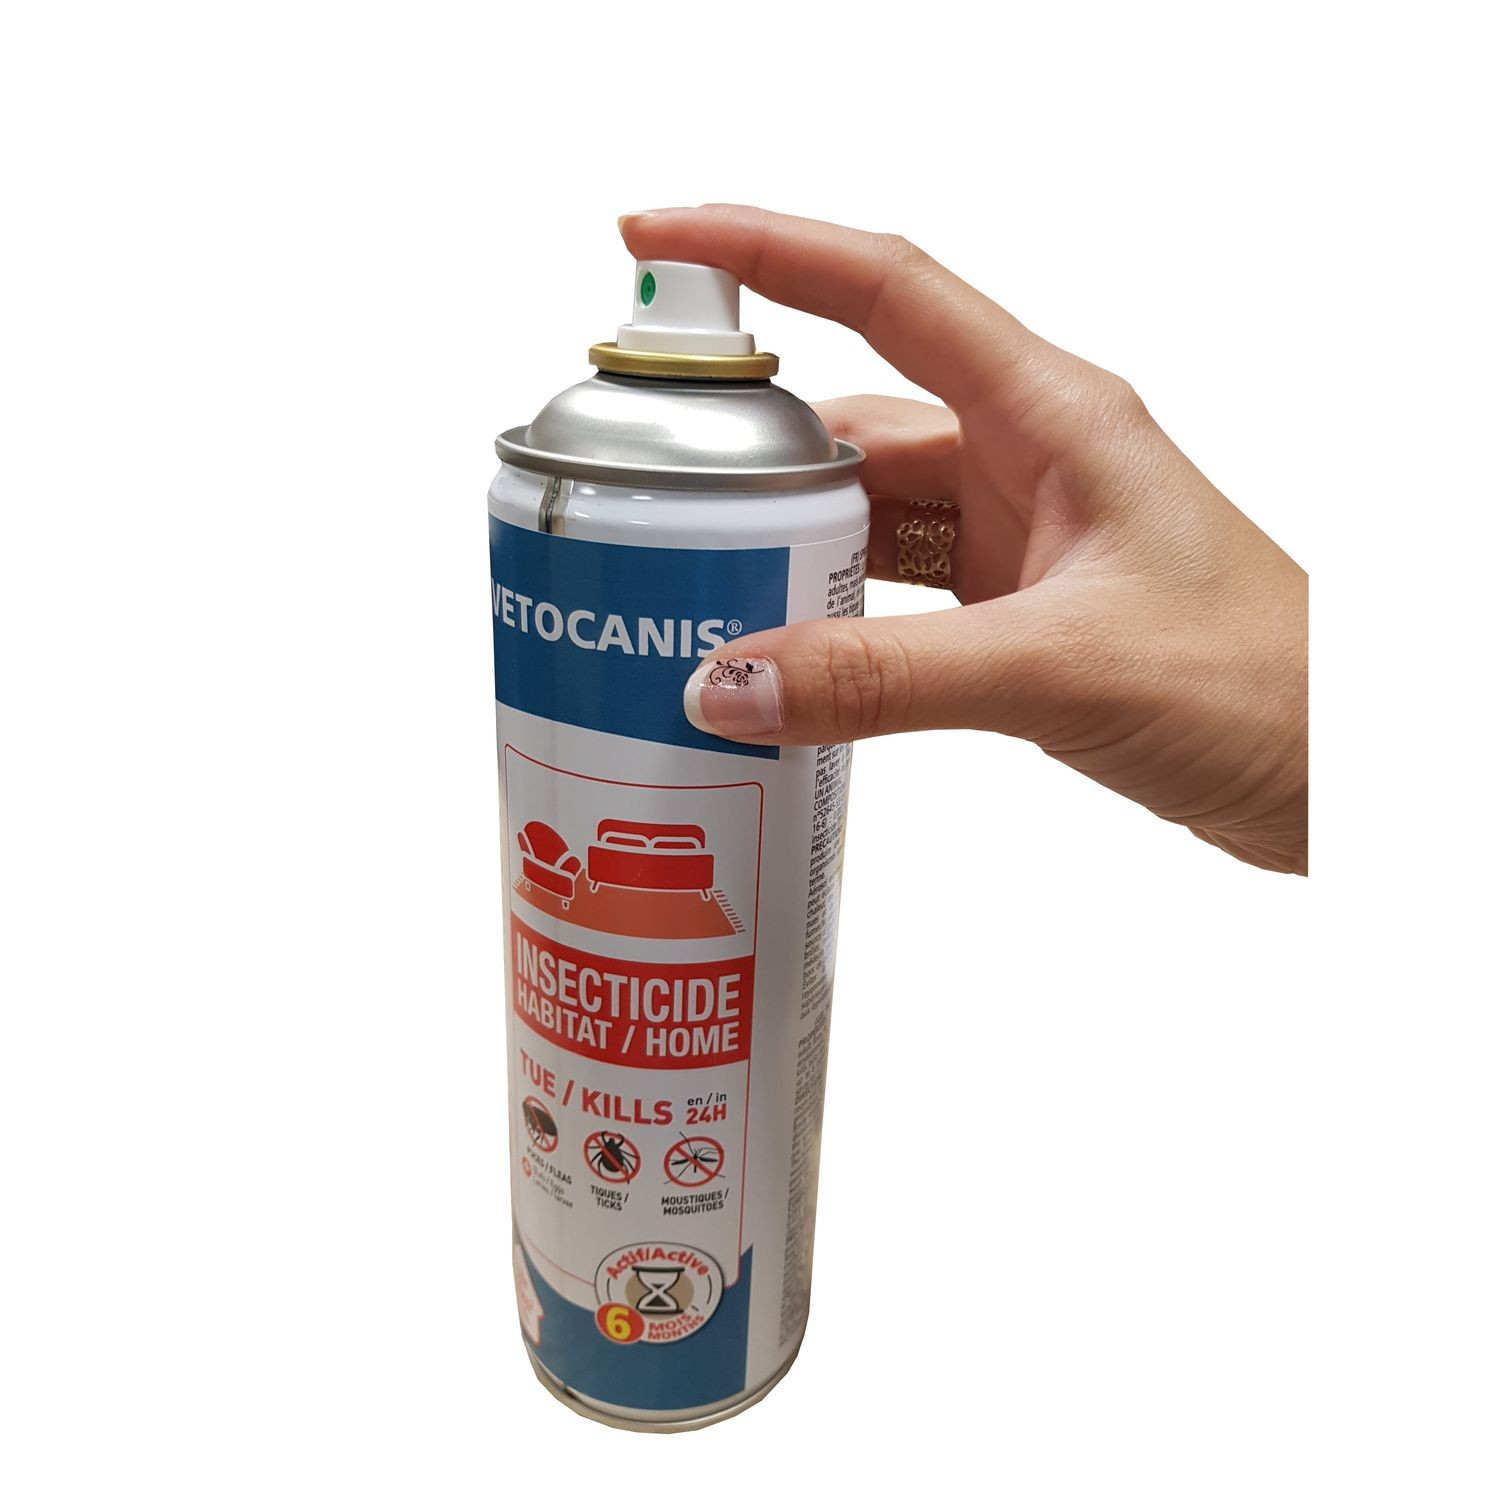 Vétocanis spray insecticida para el hogar : elimina pulgas, garrapatas y mosquitos